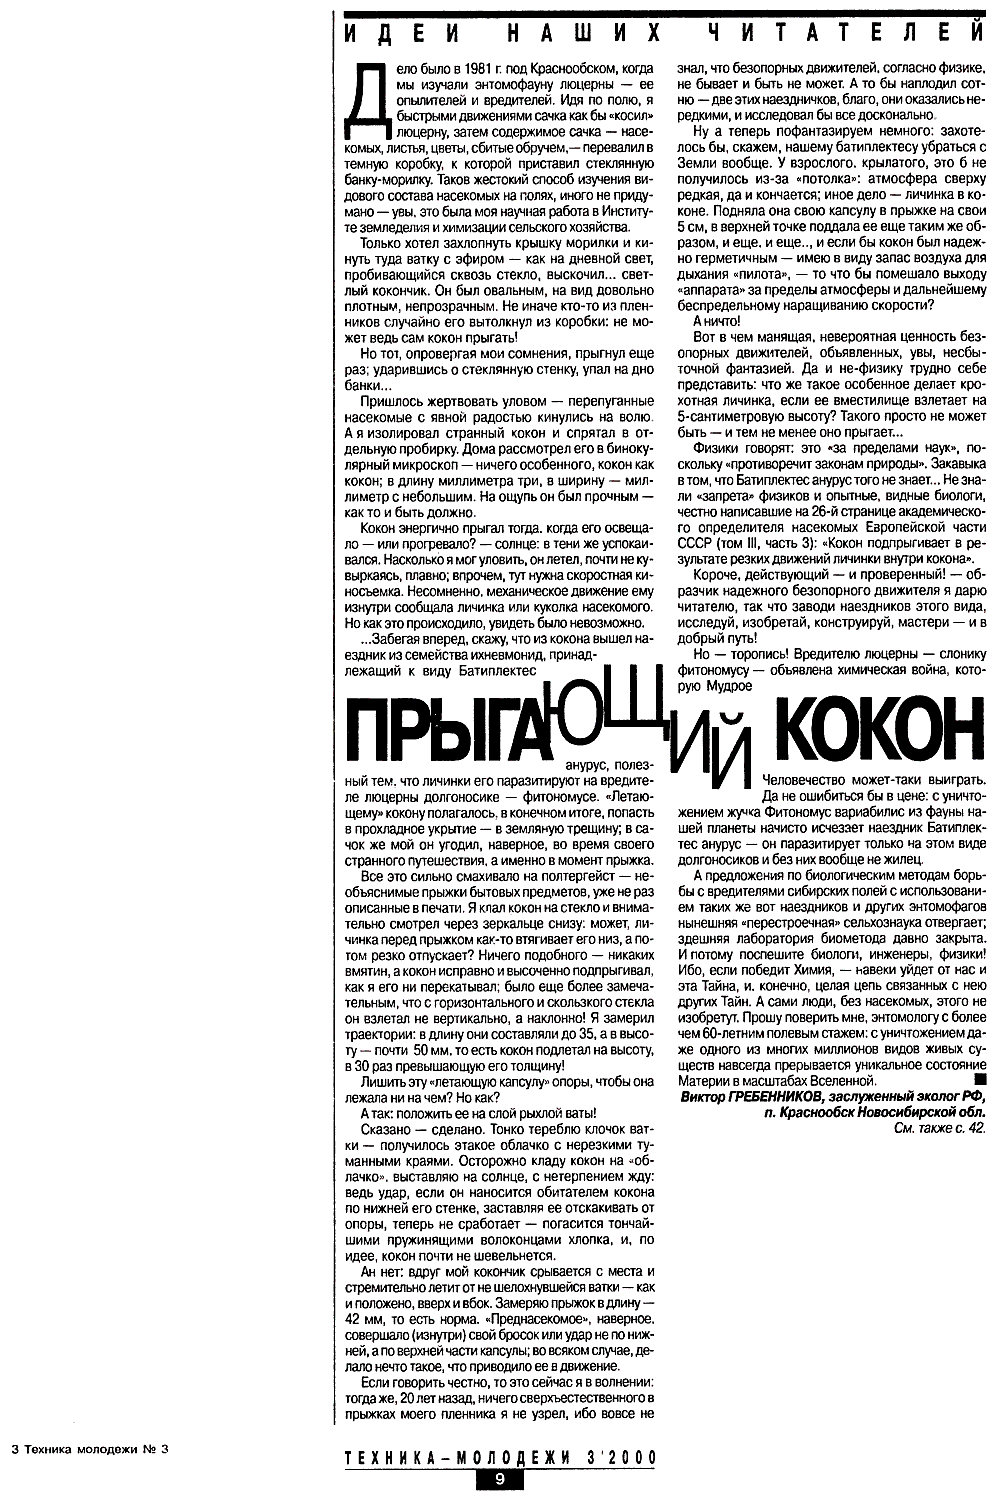 Прыгающий кокон. В.С. Гребенников. Техника-молодежи, 2000, №3, с.9